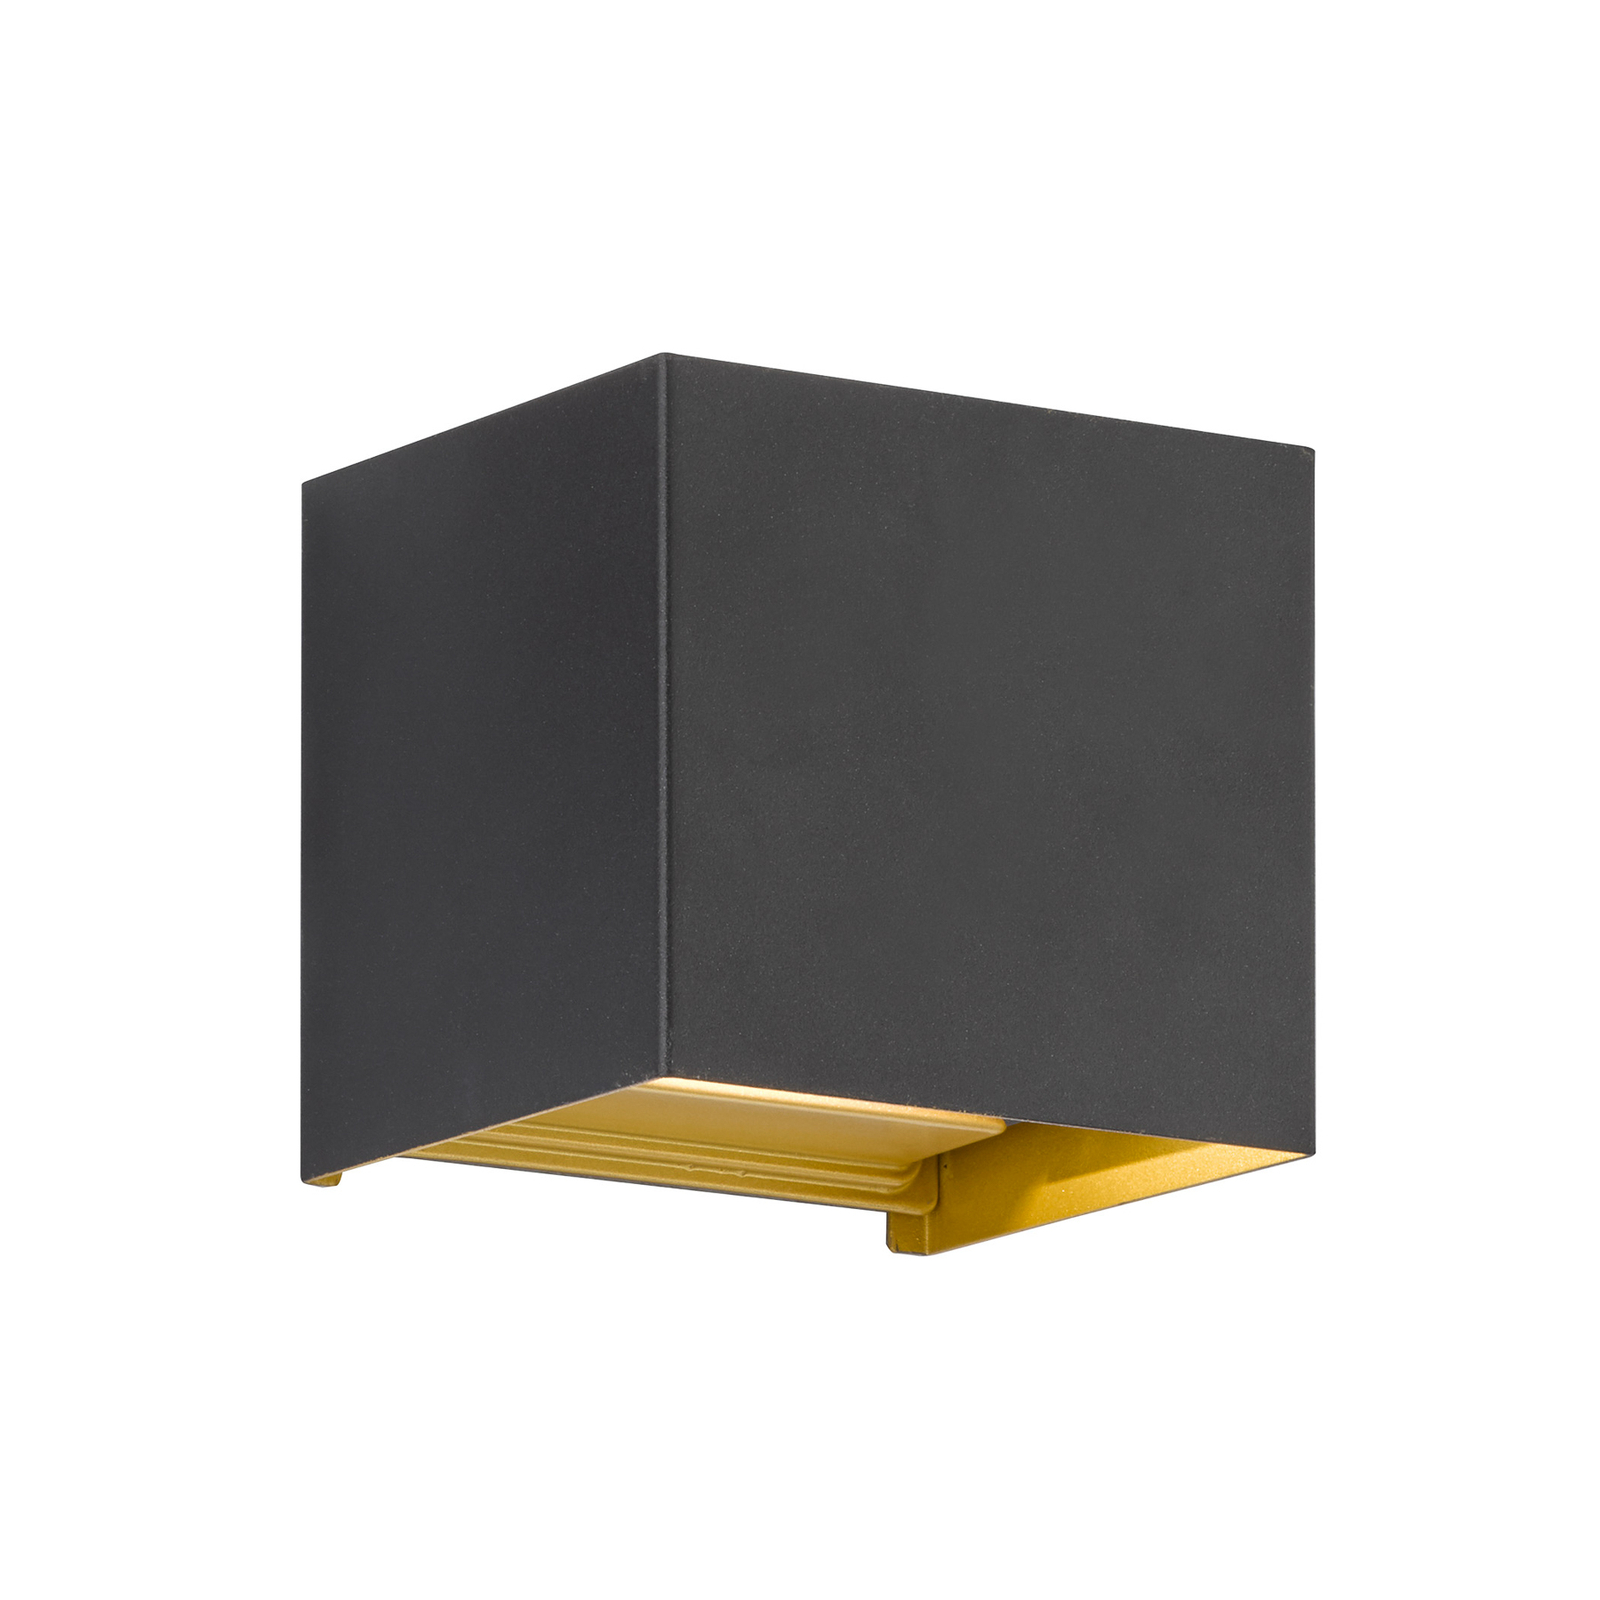 Thore LED utendørs vegglampe, svart/gullfarget, bredde 11 cm